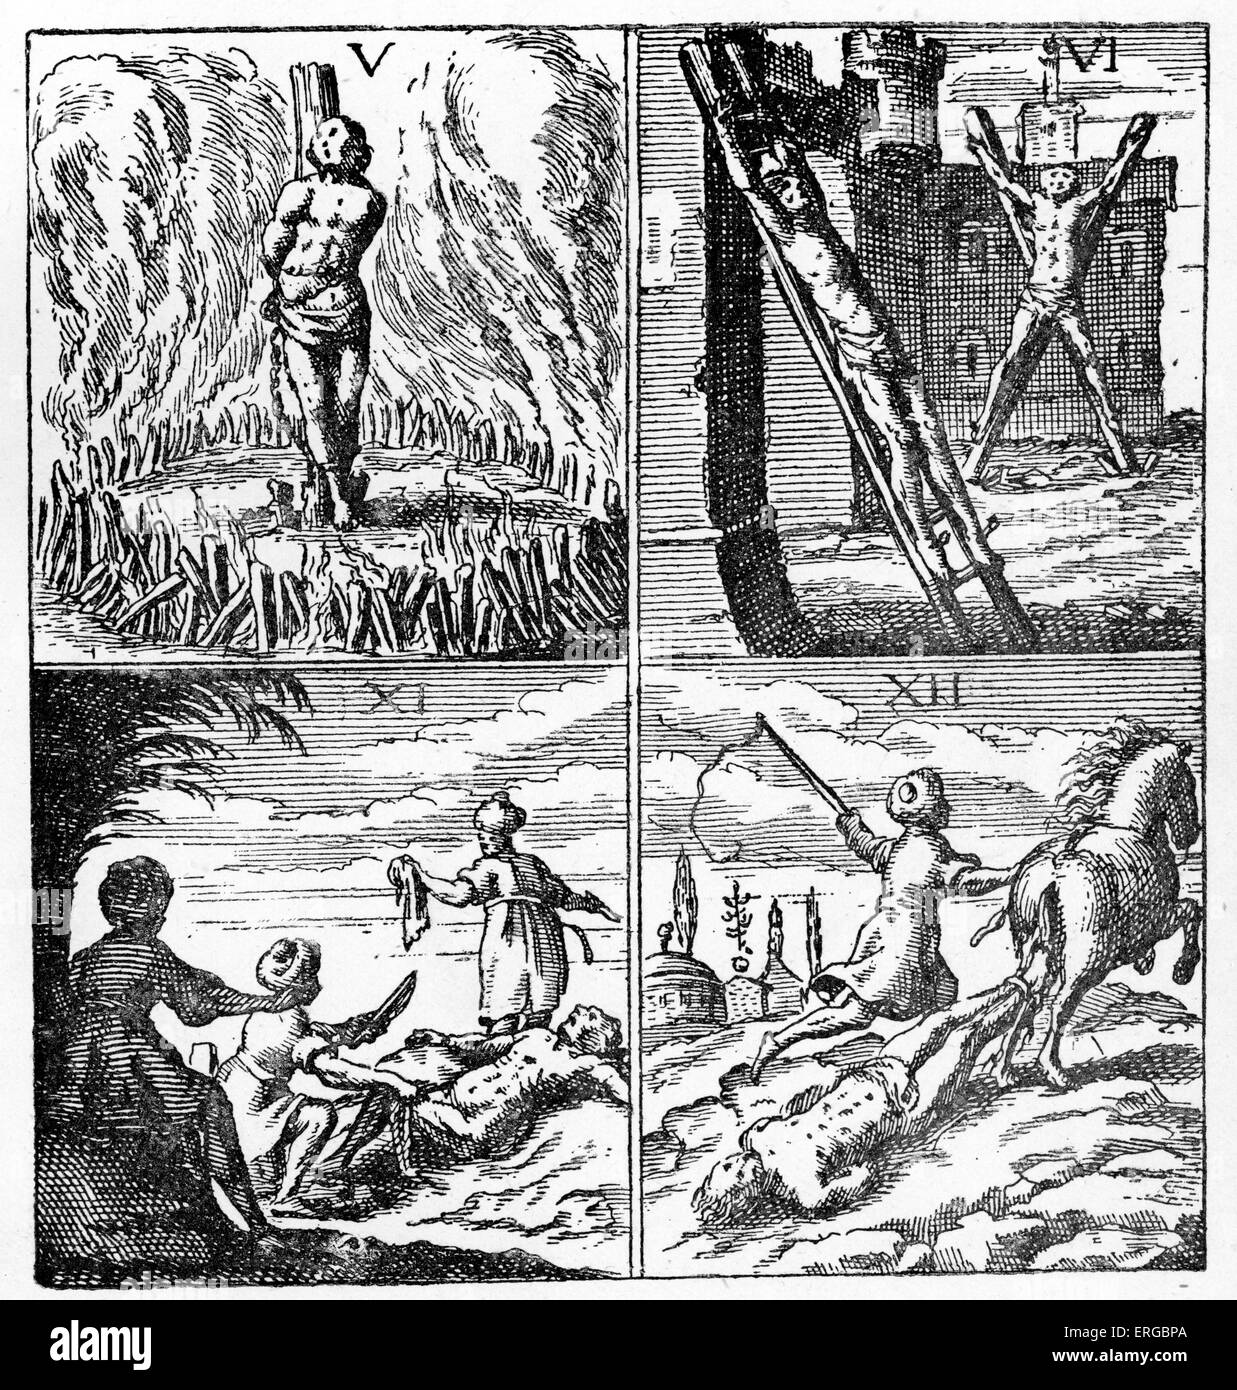 Christliche Sklaven gefoltert in Algerien (17. Jahrhundert Abbildung).  Algerien war damals Teil des Osmanischen Reiches. Beschriftung Stockfoto